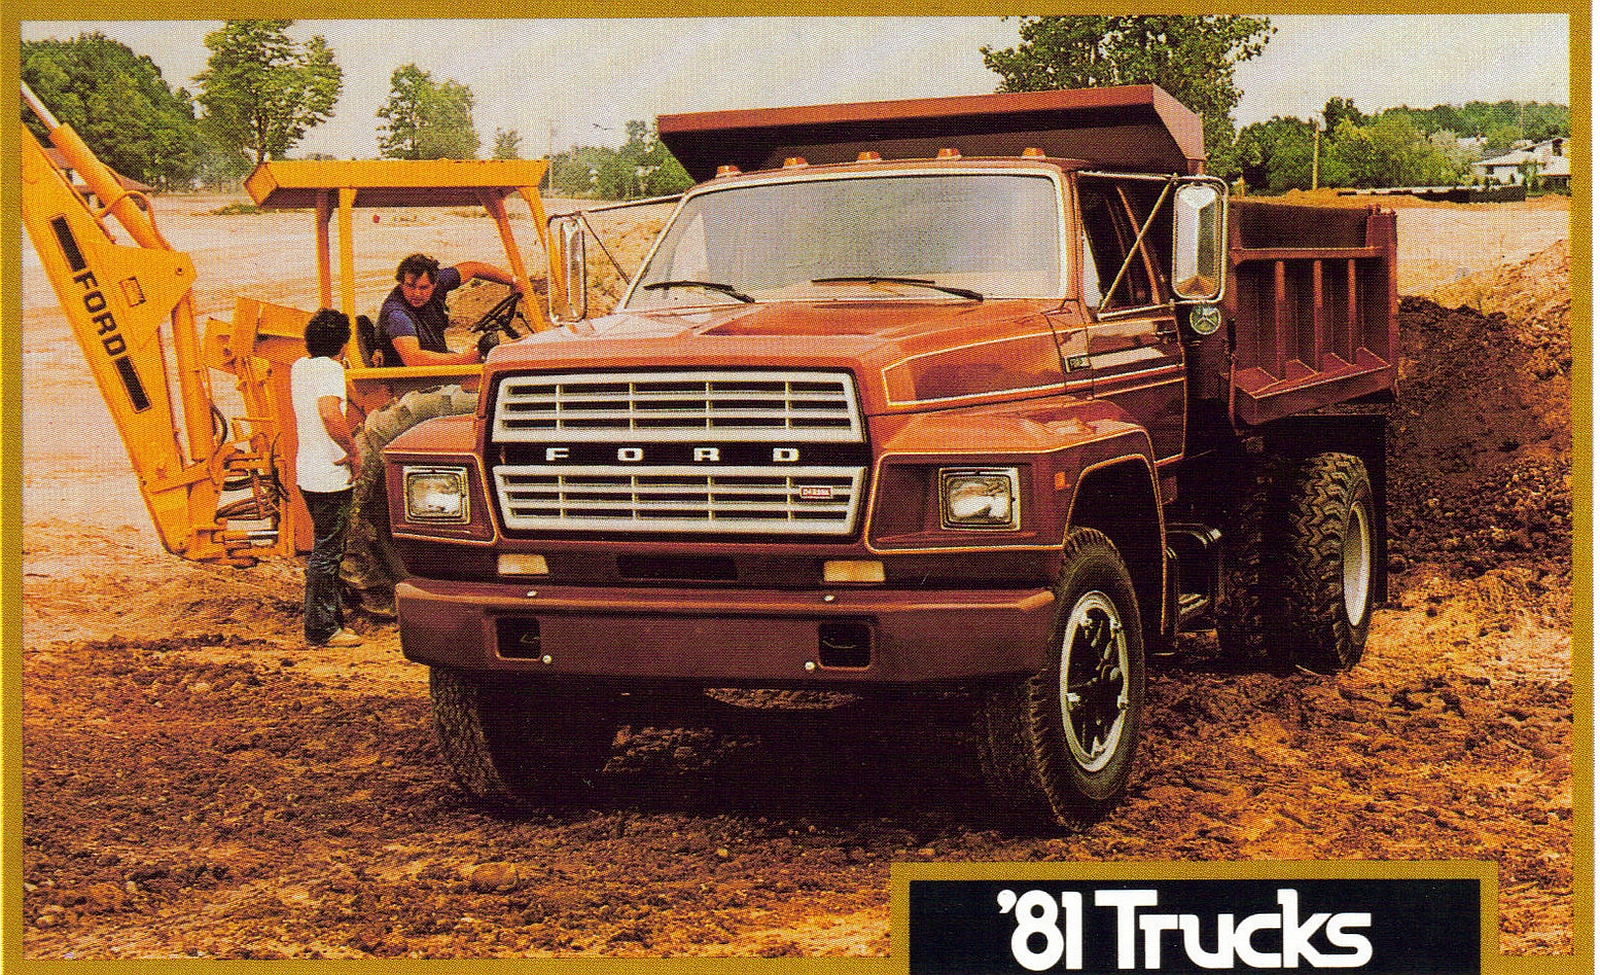 transpress nz: 1981 Ford F series dump truck